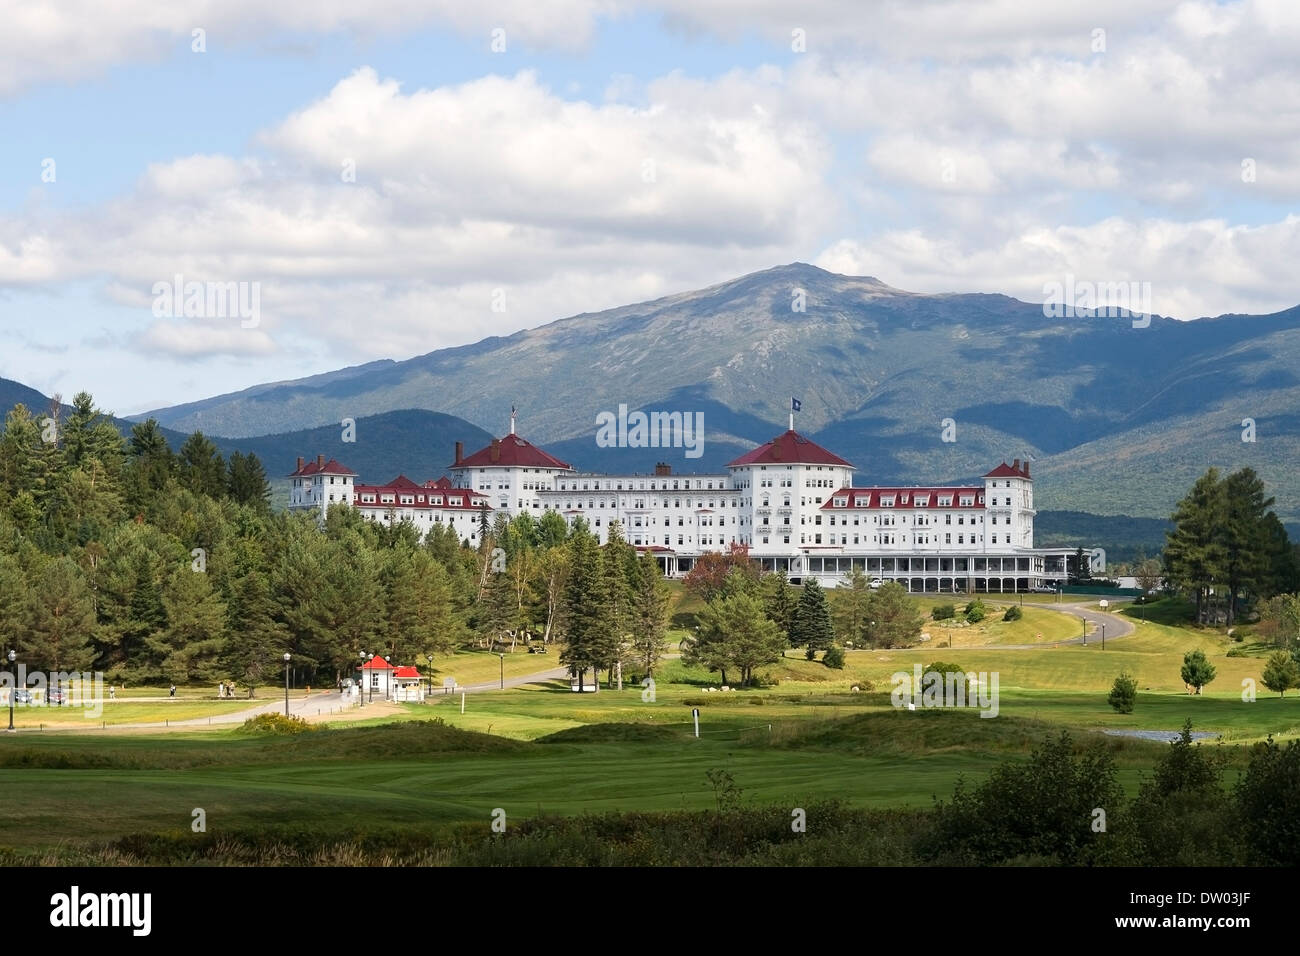 L'hôtel Mount Washington dans les Montagnes Blanches du New Hampshire. Banque D'Images